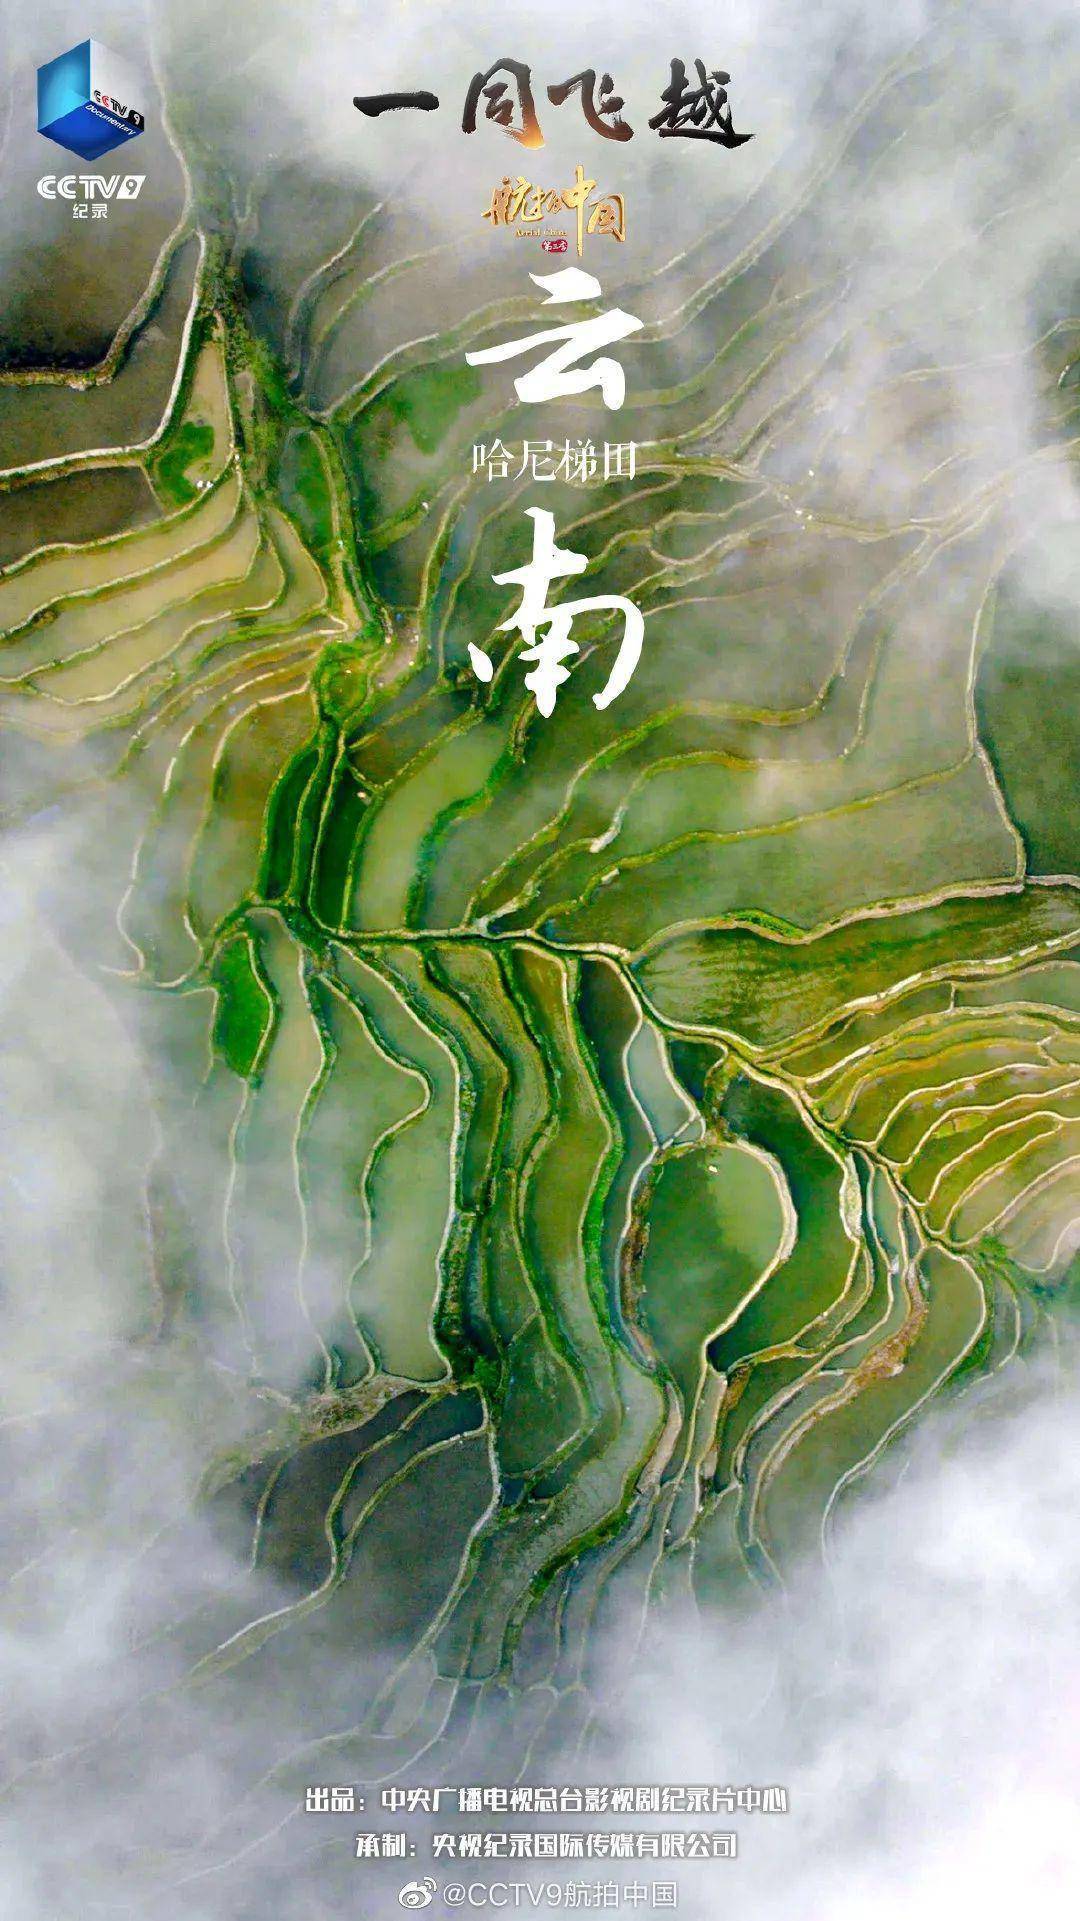 星空下丨《航拍中国》第三次带你"云端旅游"